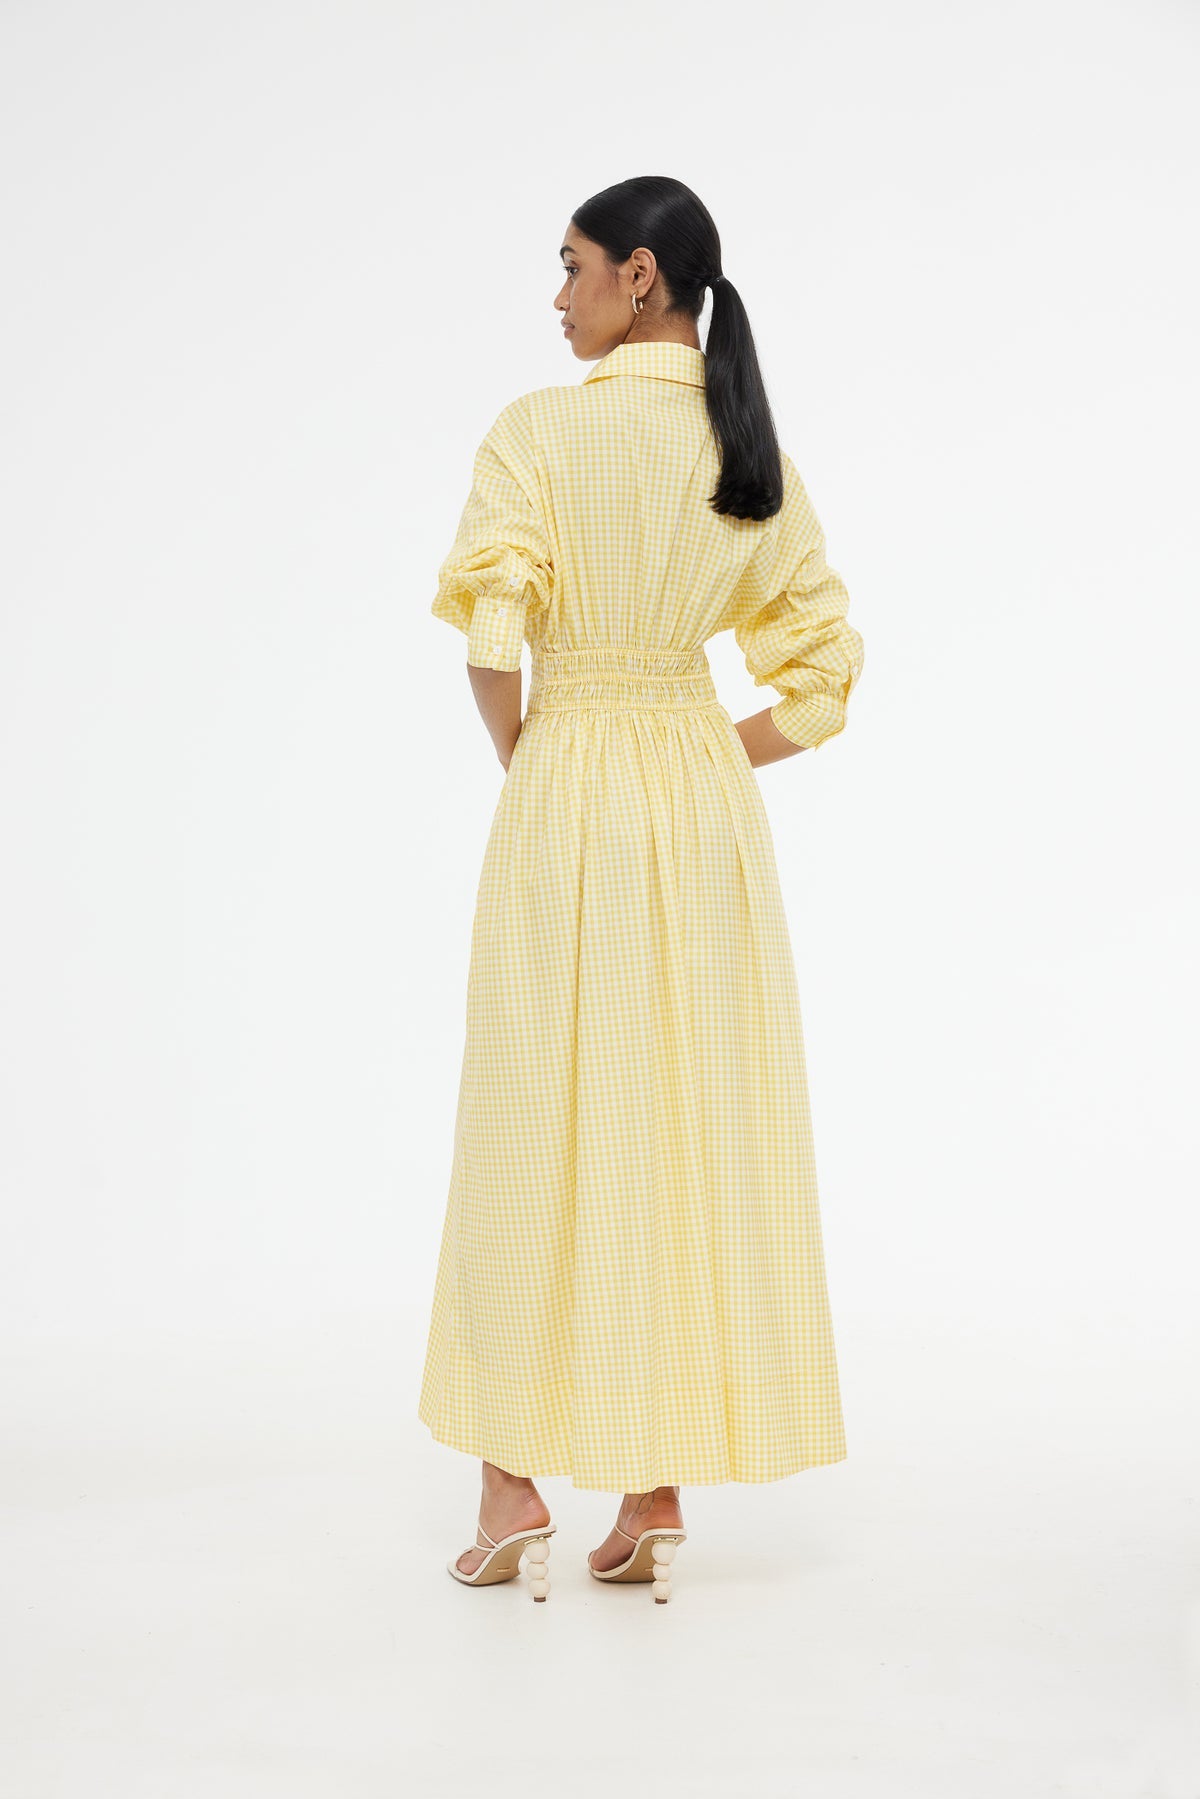 Kinney Emma Citrus Gingham Shirt Dress